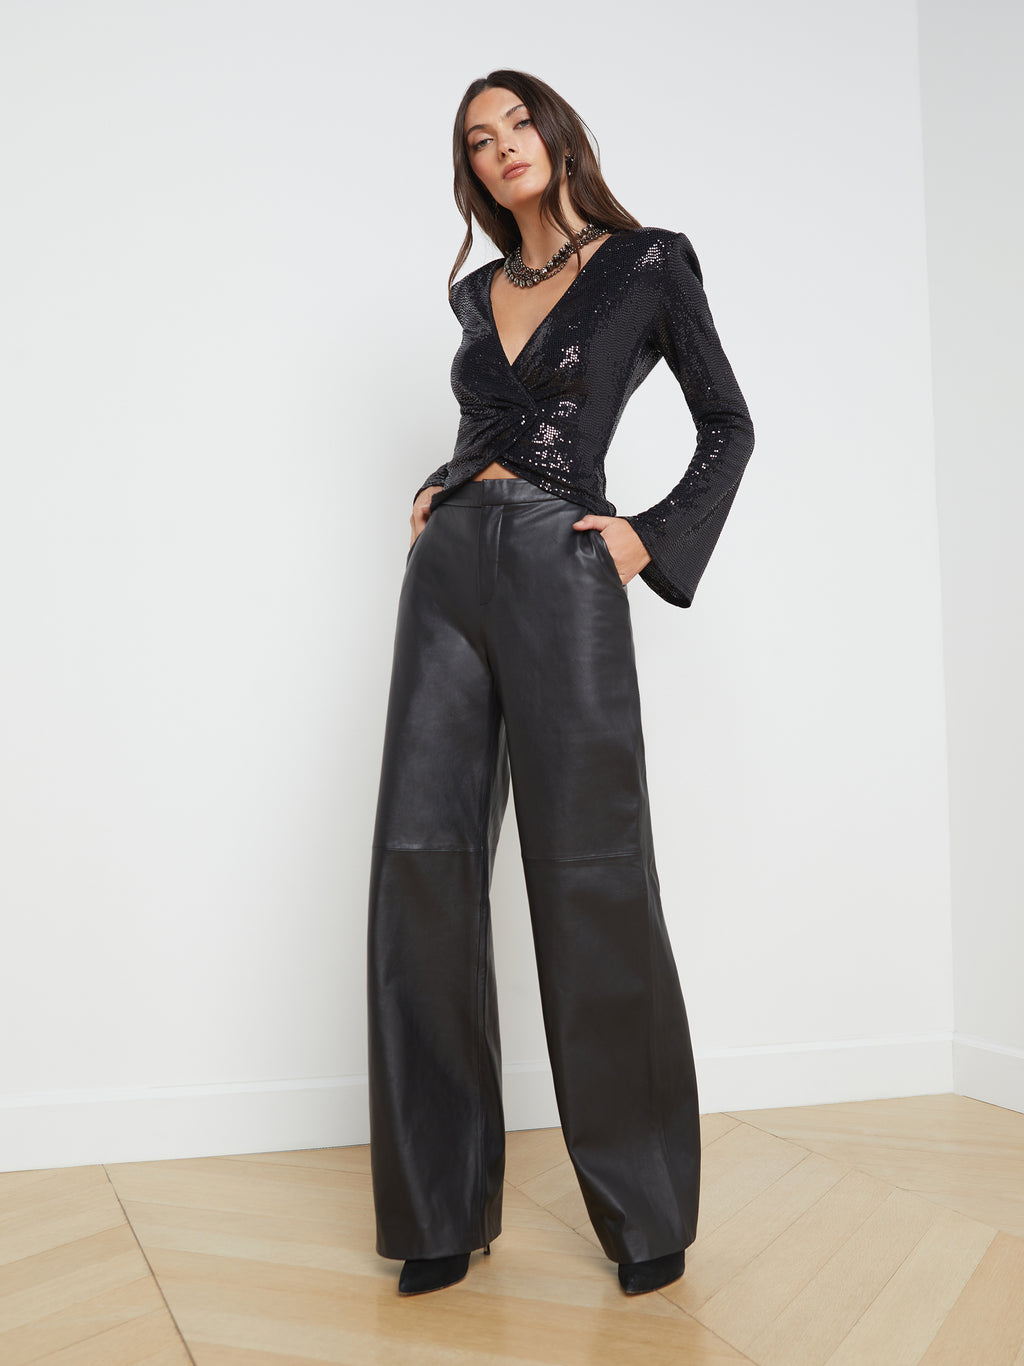 Women's Elegant Leather Jackets & Clothing | L'AGENCE